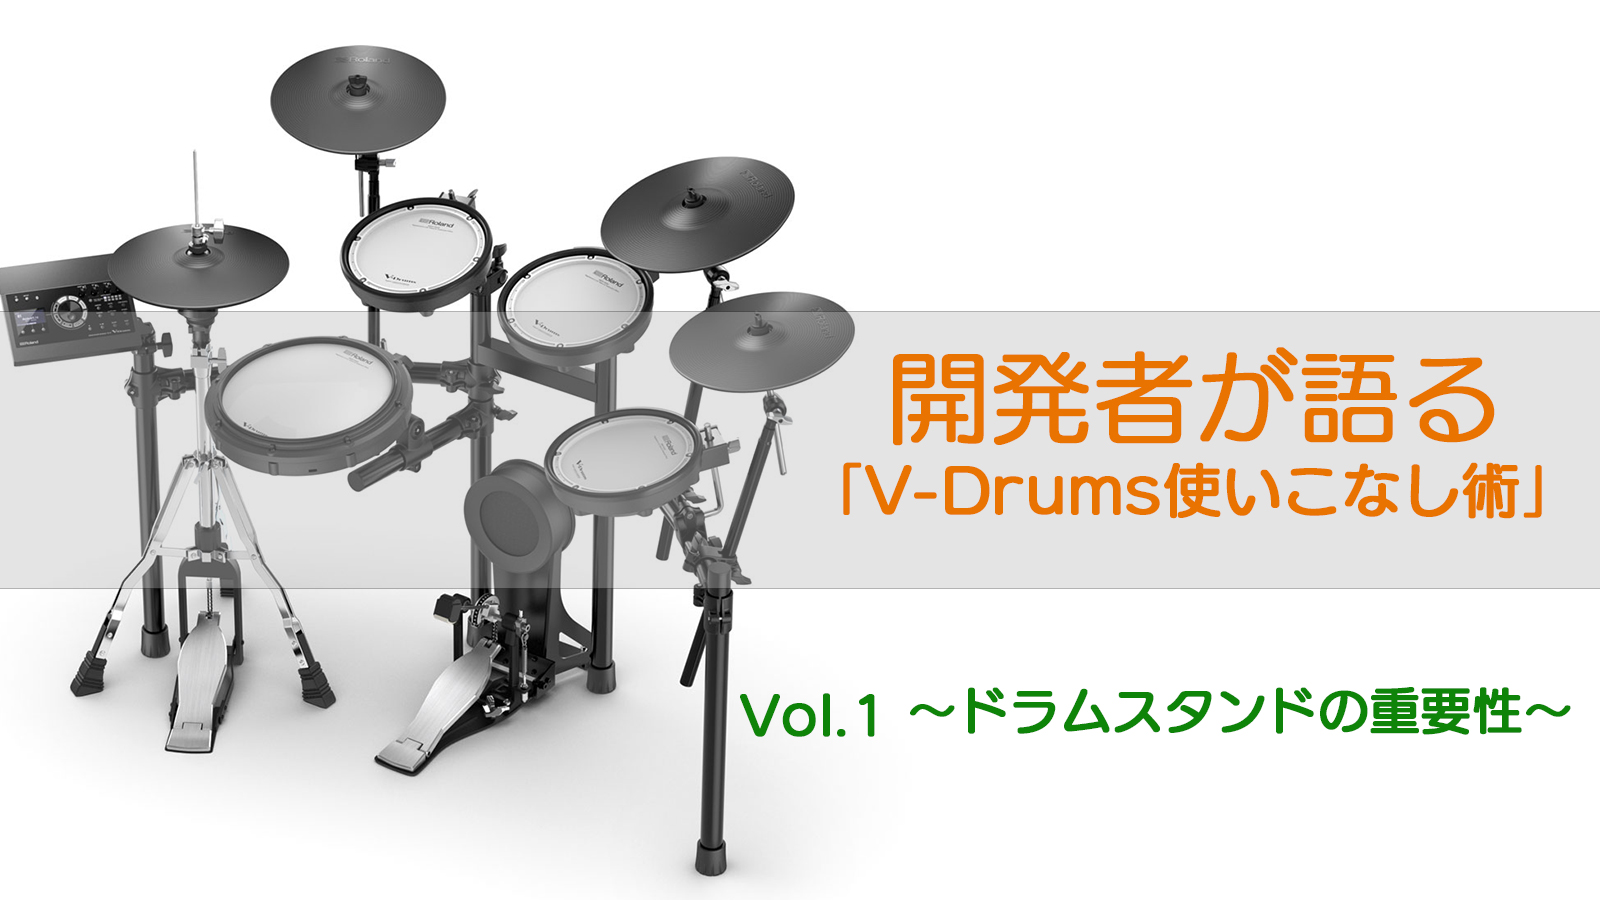 Roland - Blog - Support - 【SUPPORT】開発者が語る「V-Drums 